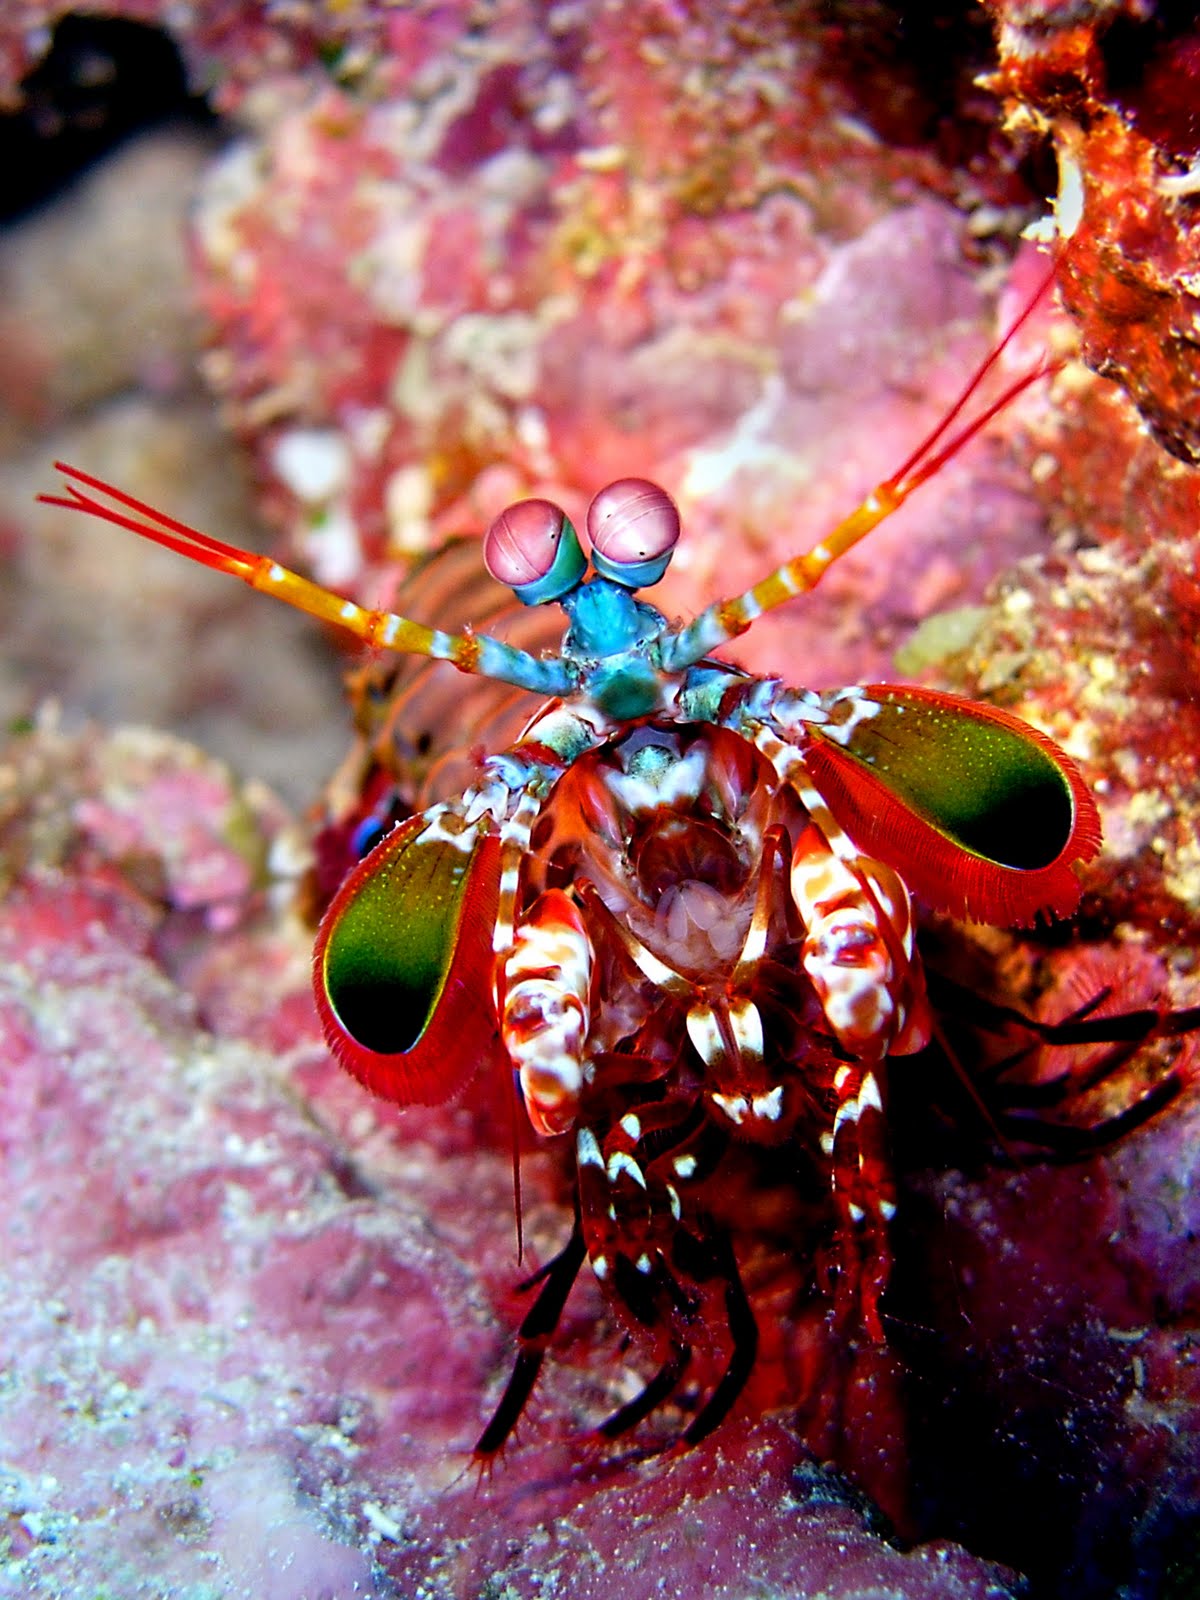 میگوی آخوندکی | mantis shrimp! (+تصـآویر) 